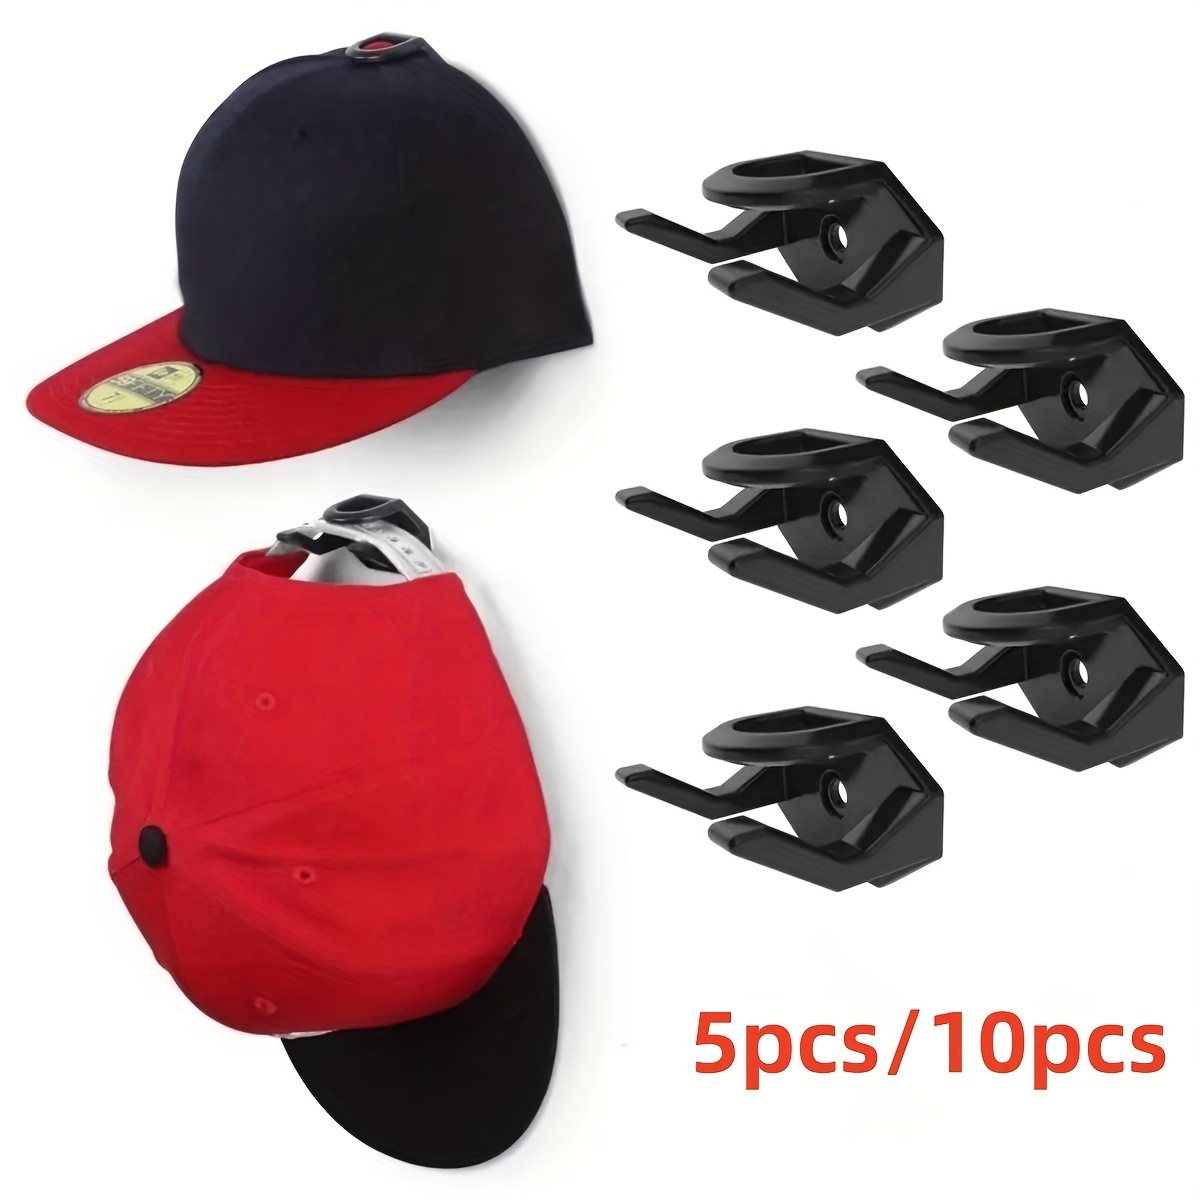 Punch-free Hat Storage Hook, Hanging Plastic Hook For Keys, Hat